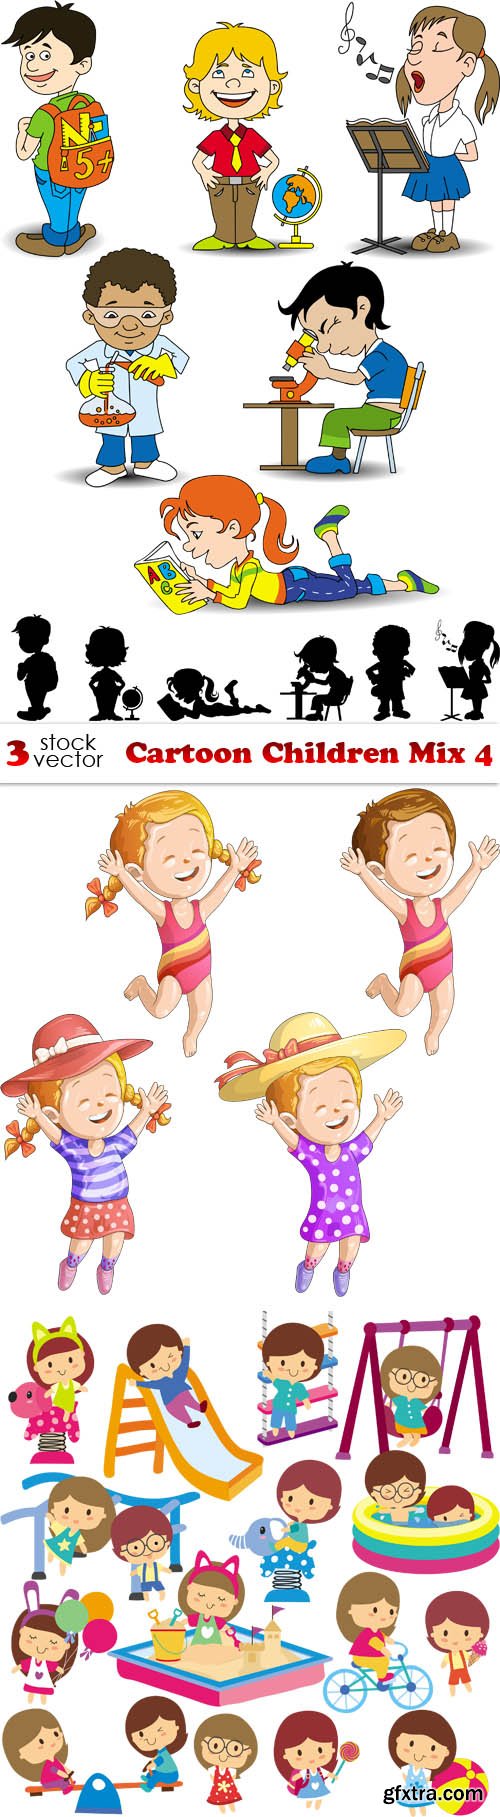 Vectors - Cartoon Children Mix 4